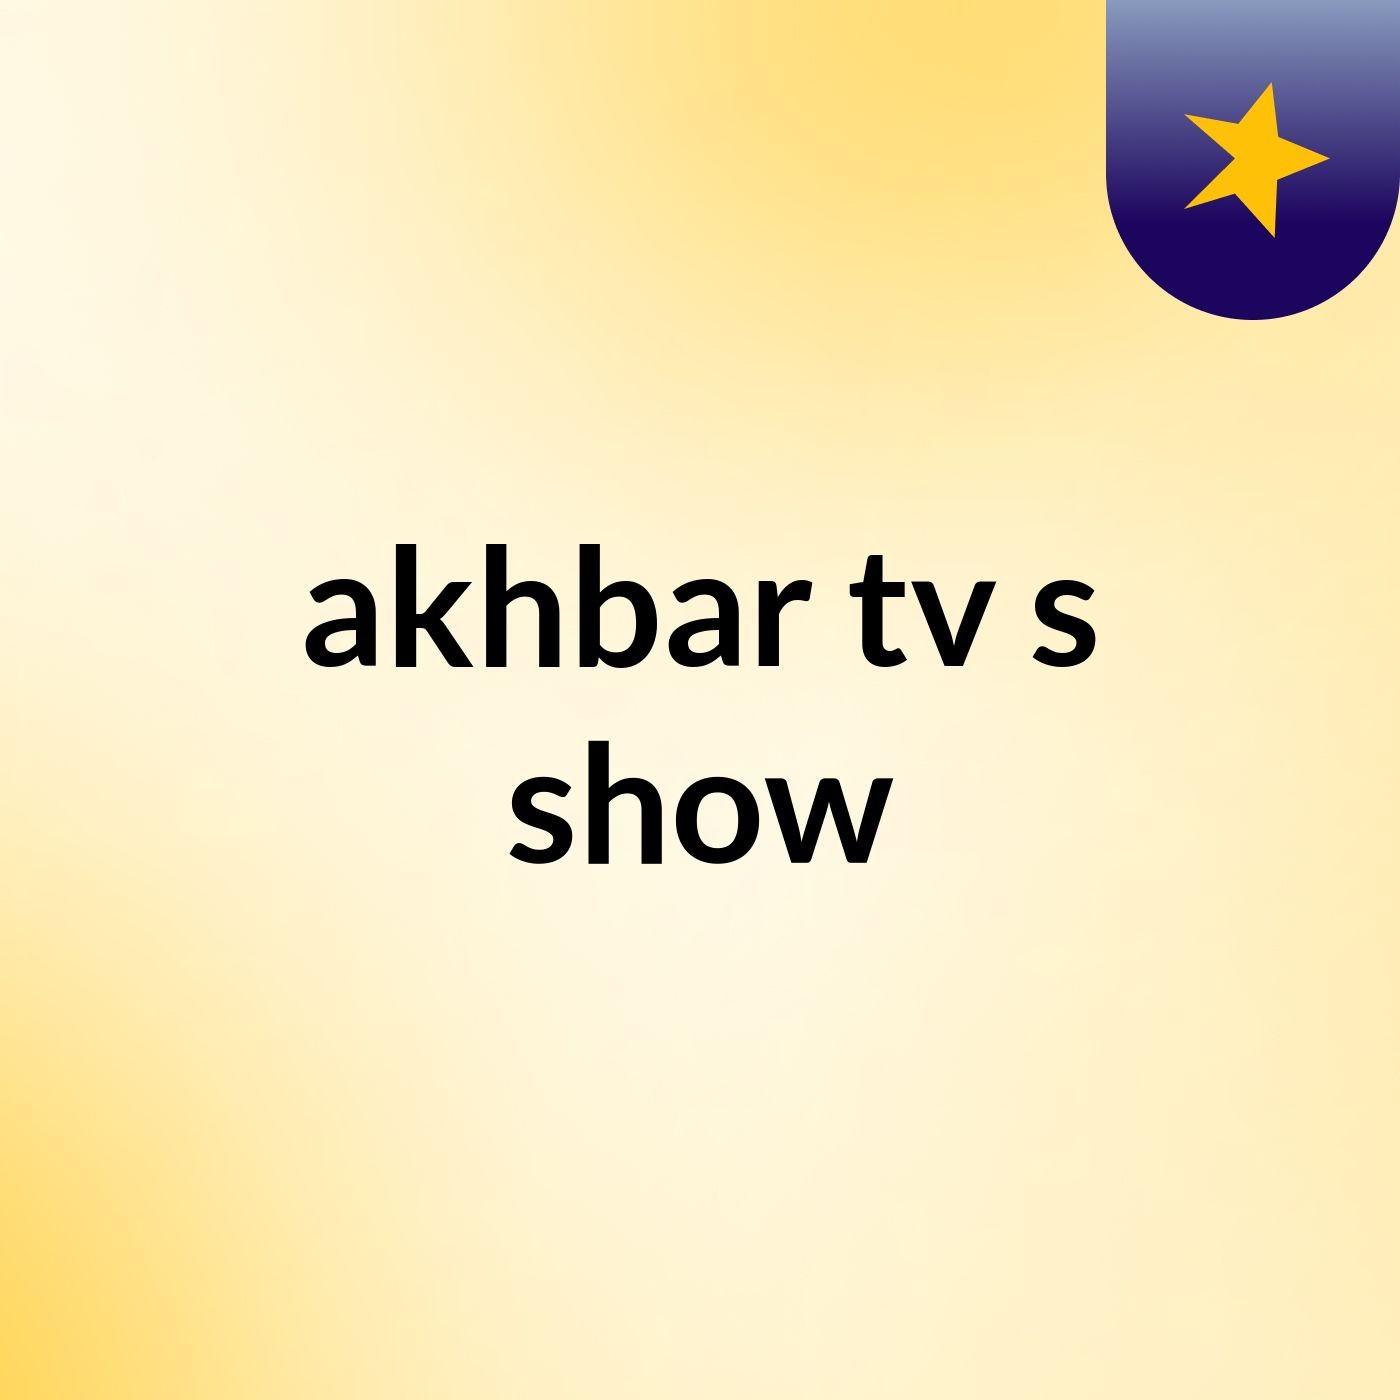 akhbar tv's show